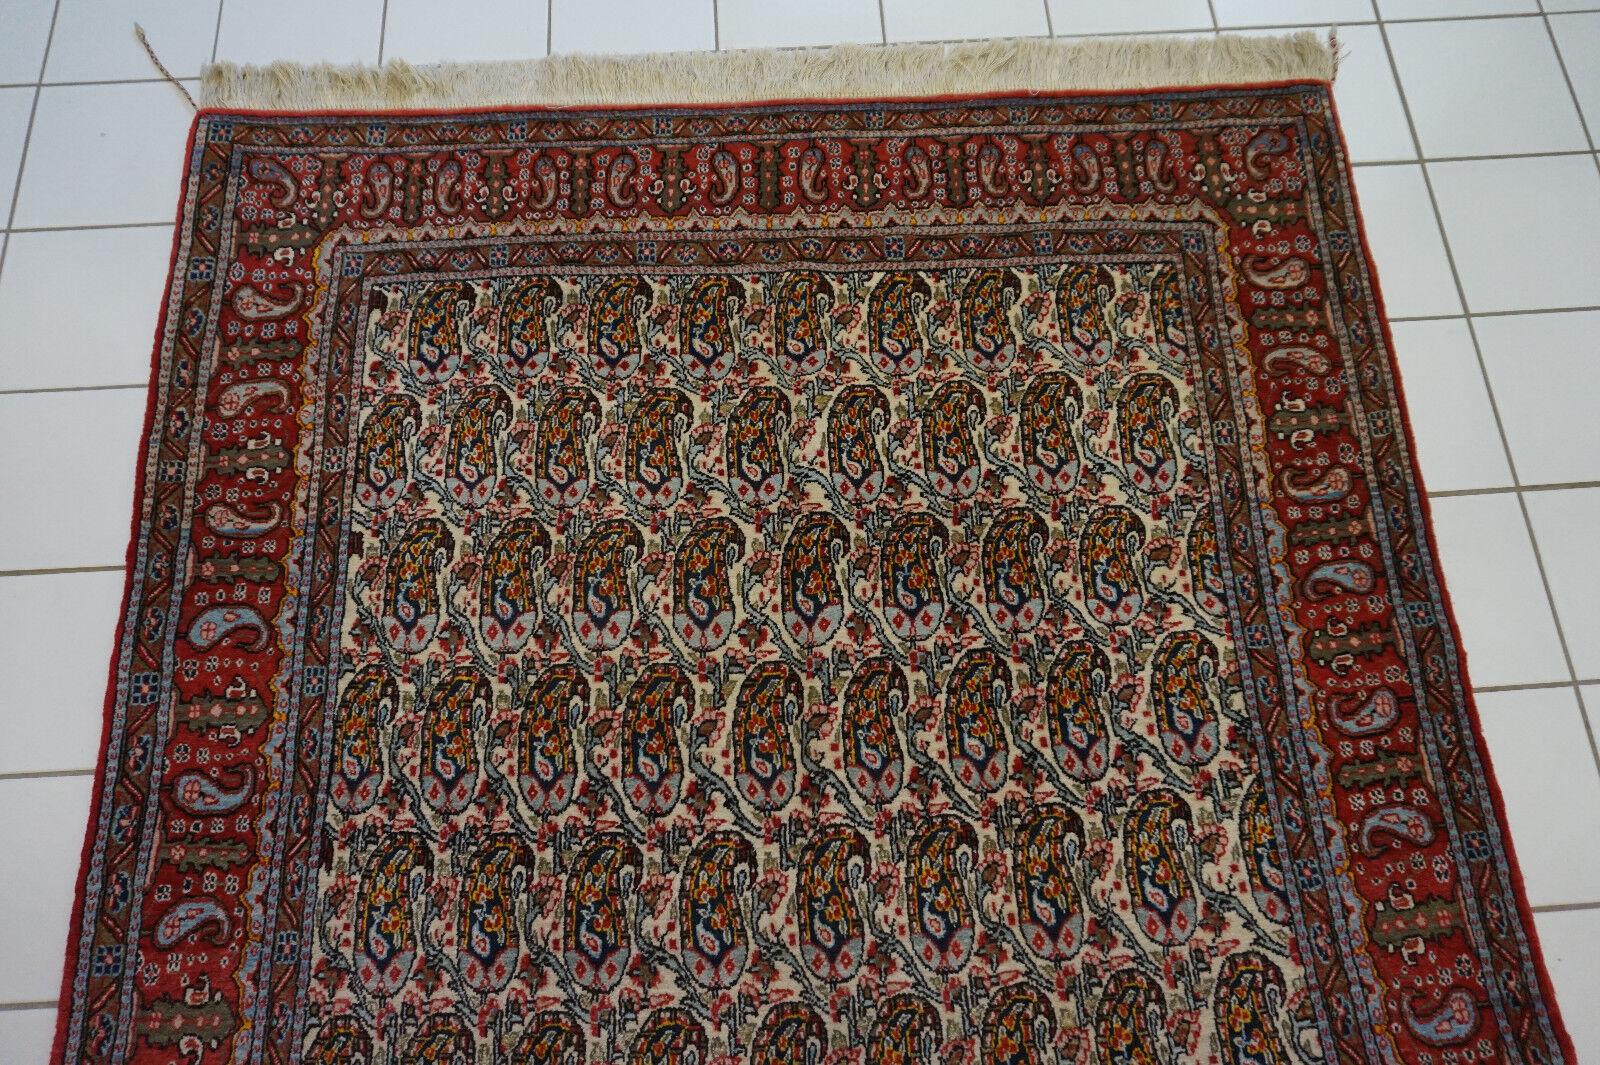 Wool Handmade Vintage Persian Style Qum Rug 4.3' x 6.9', 1960s - 1D47